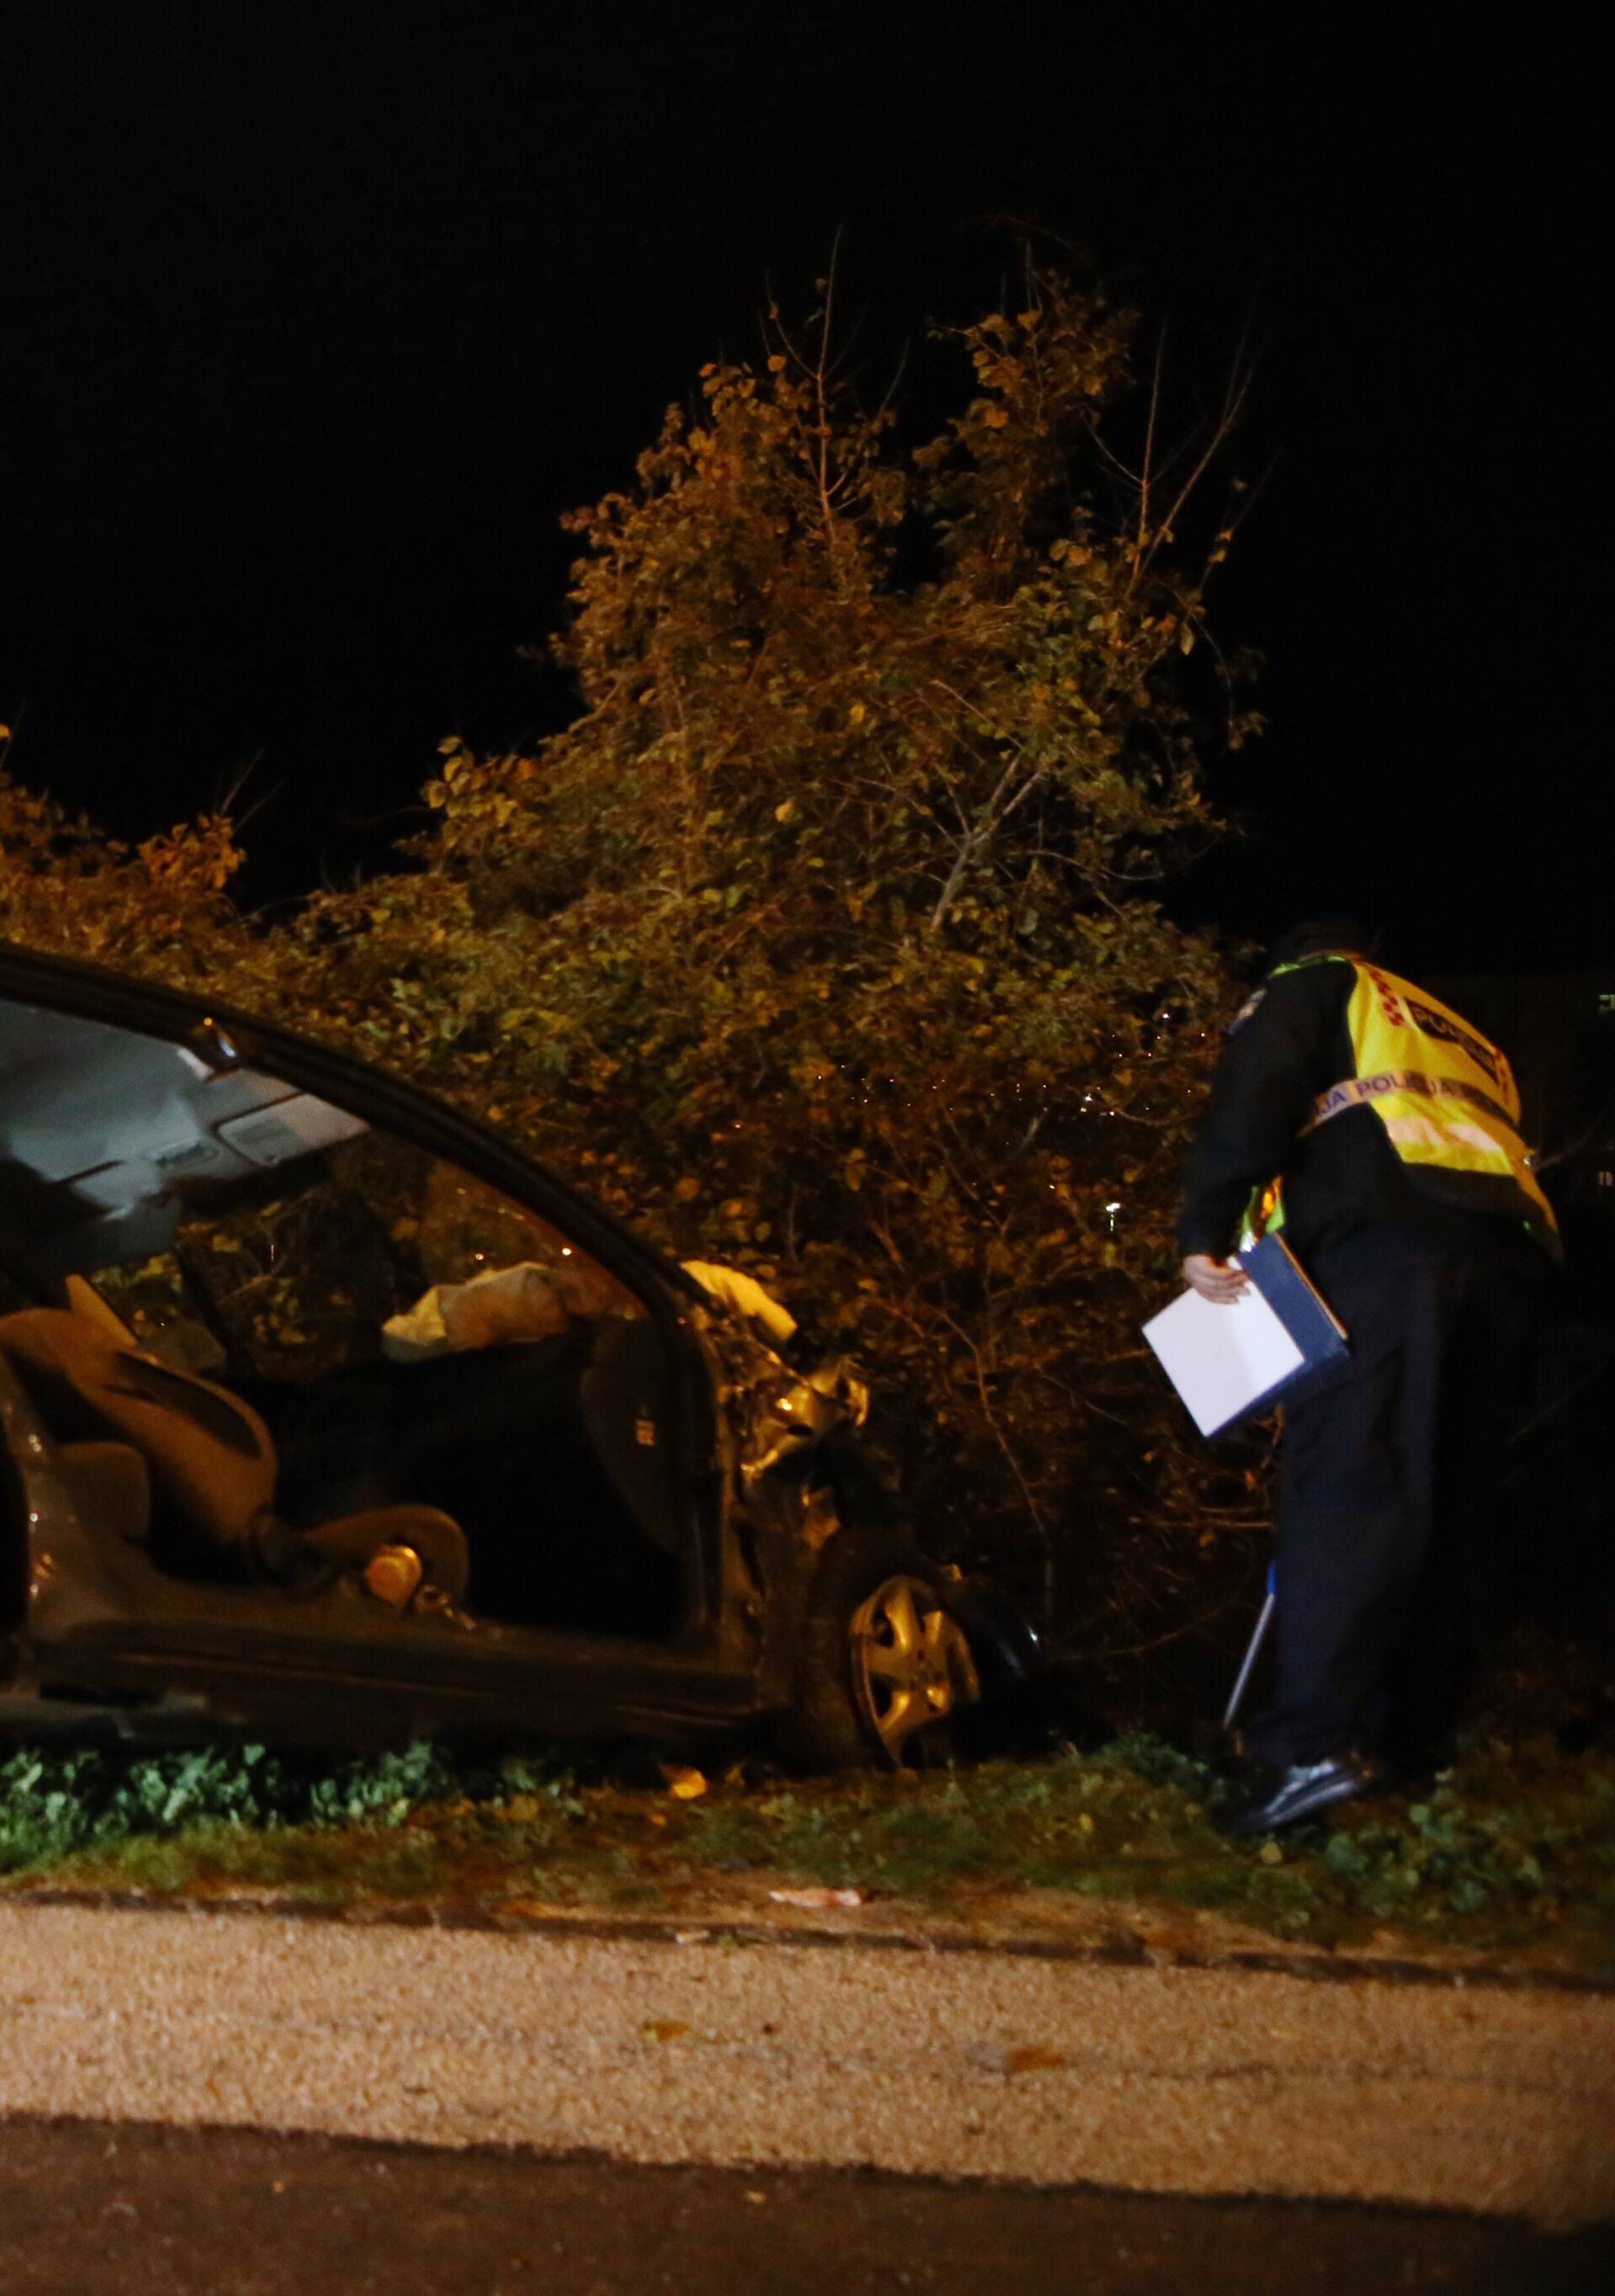 Split: Automobilom sletio s ceste i oÅ¡tetio parkirane automobile